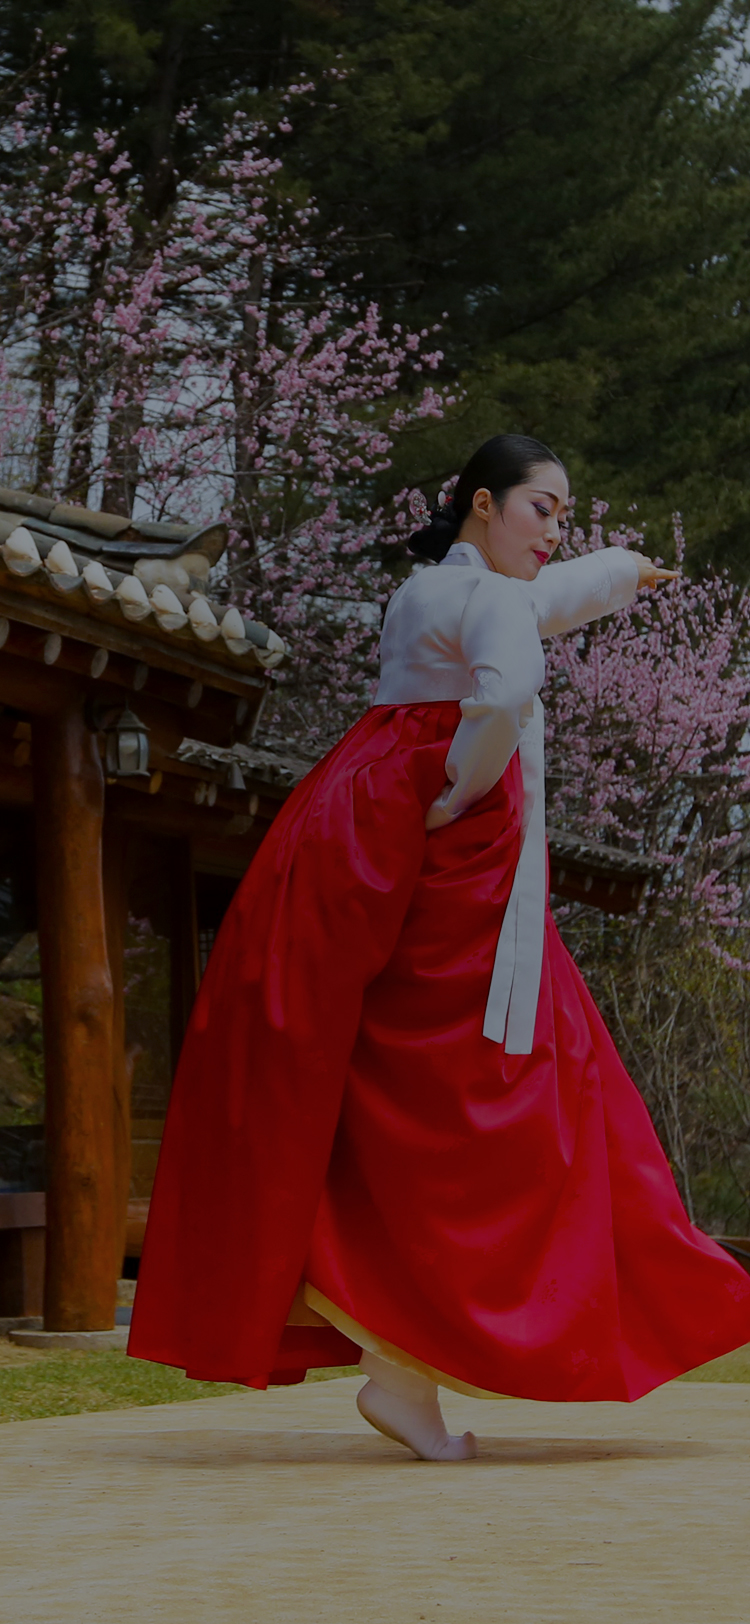 한국 전통 문화를 알리는 사람들